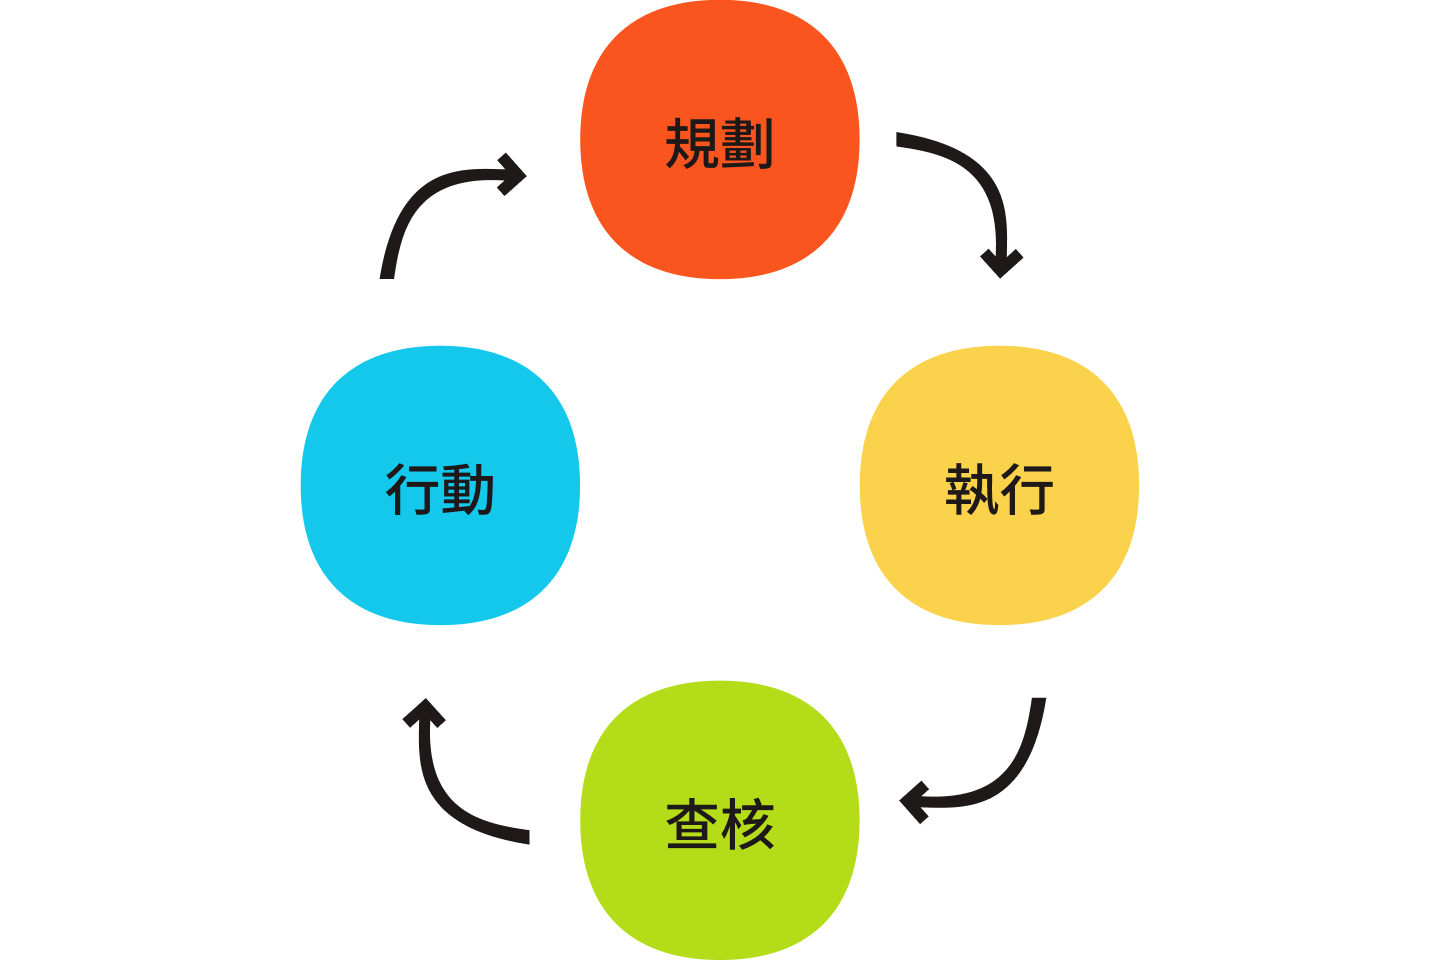 PDCA 循環展示了一個計劃、執行、查核和行動的連續迴圈。